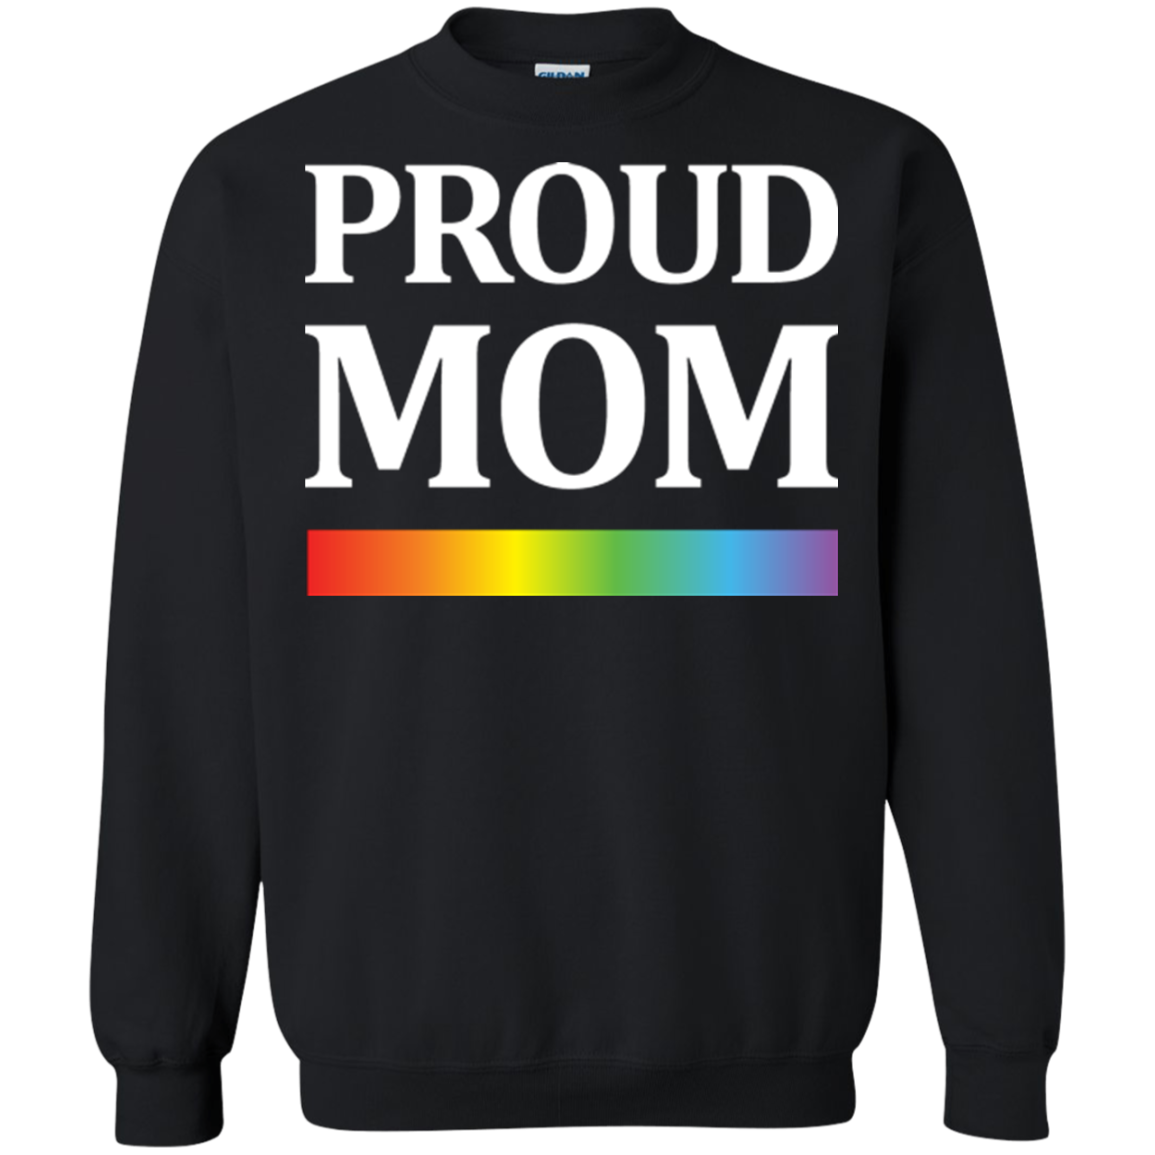 LGBT Pride "Proud Mom" Grey Sweatshirt For Men & Women